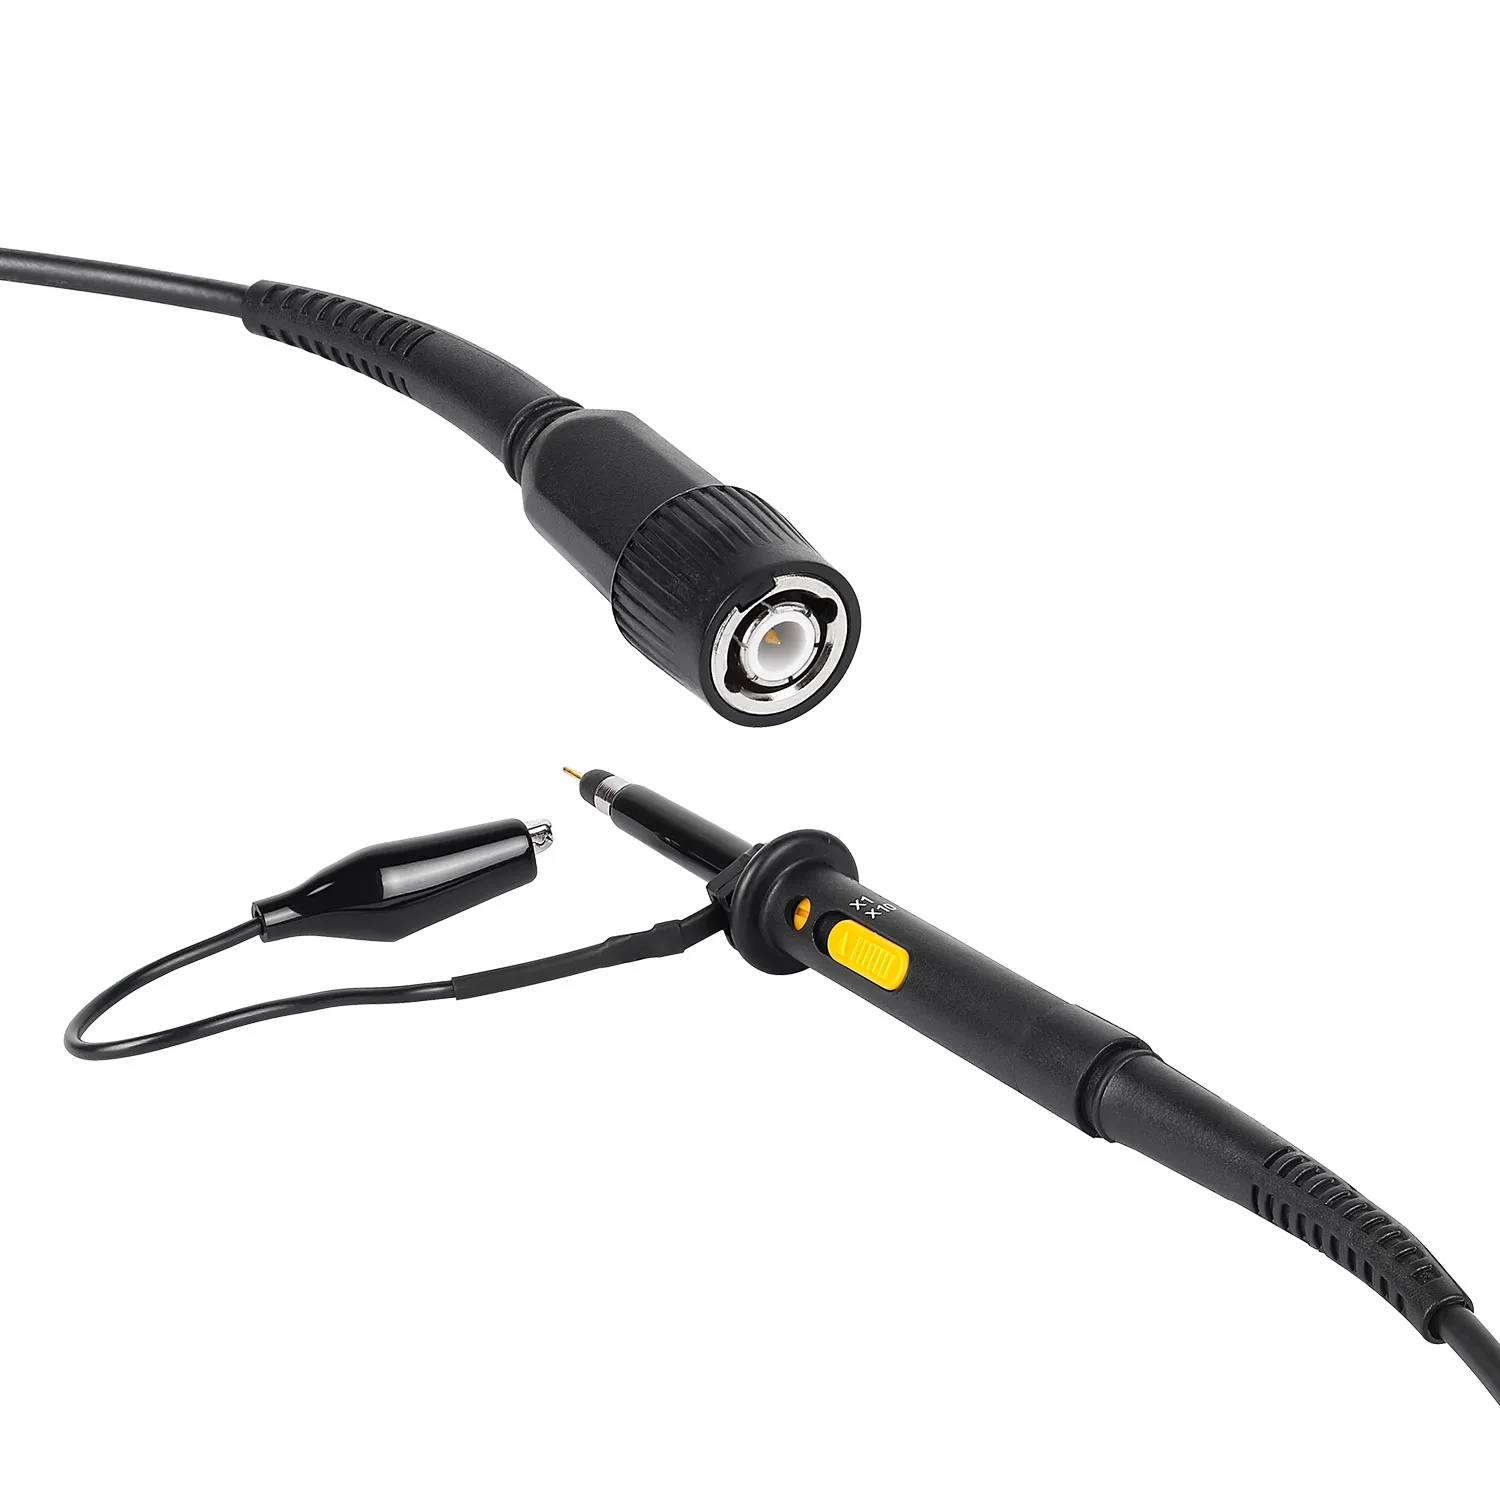 1pair oscilloscope probe Oscillo cable 200M 200MHZ scope clip x1 x10 600V 